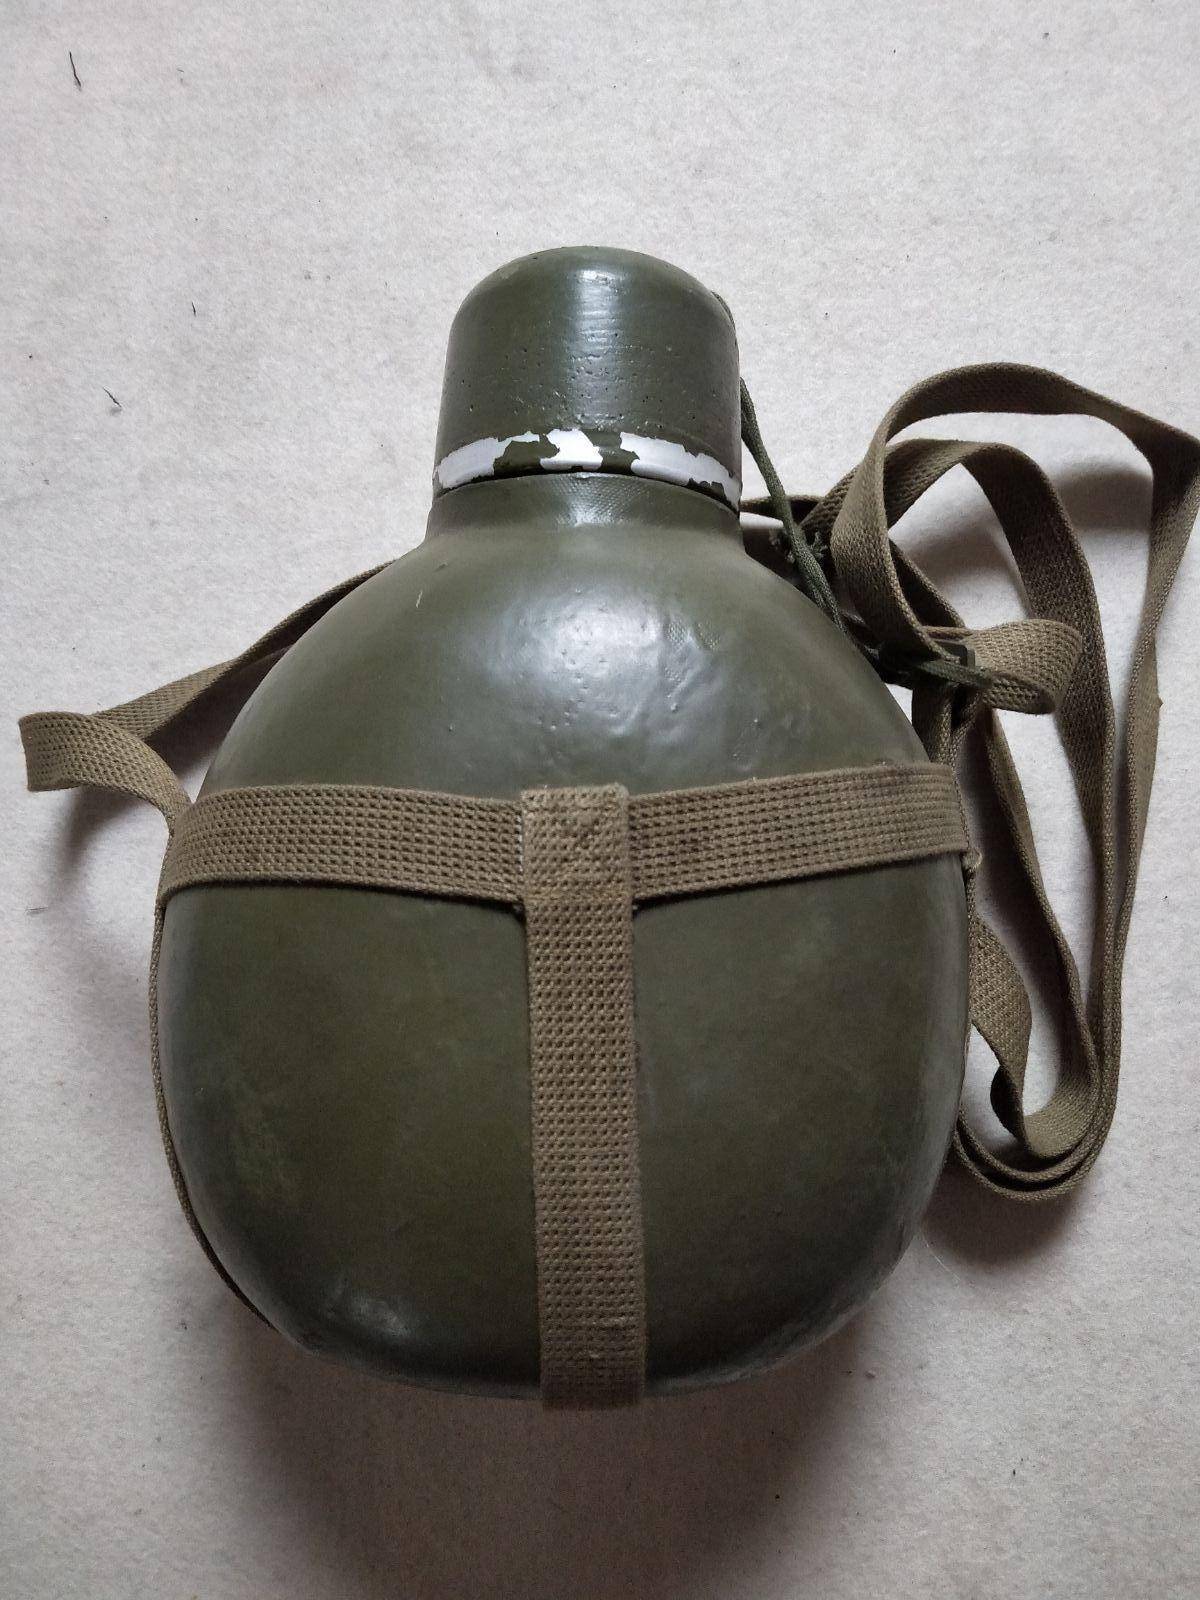 我军军用水壶,几十年里经过了多少变迁?